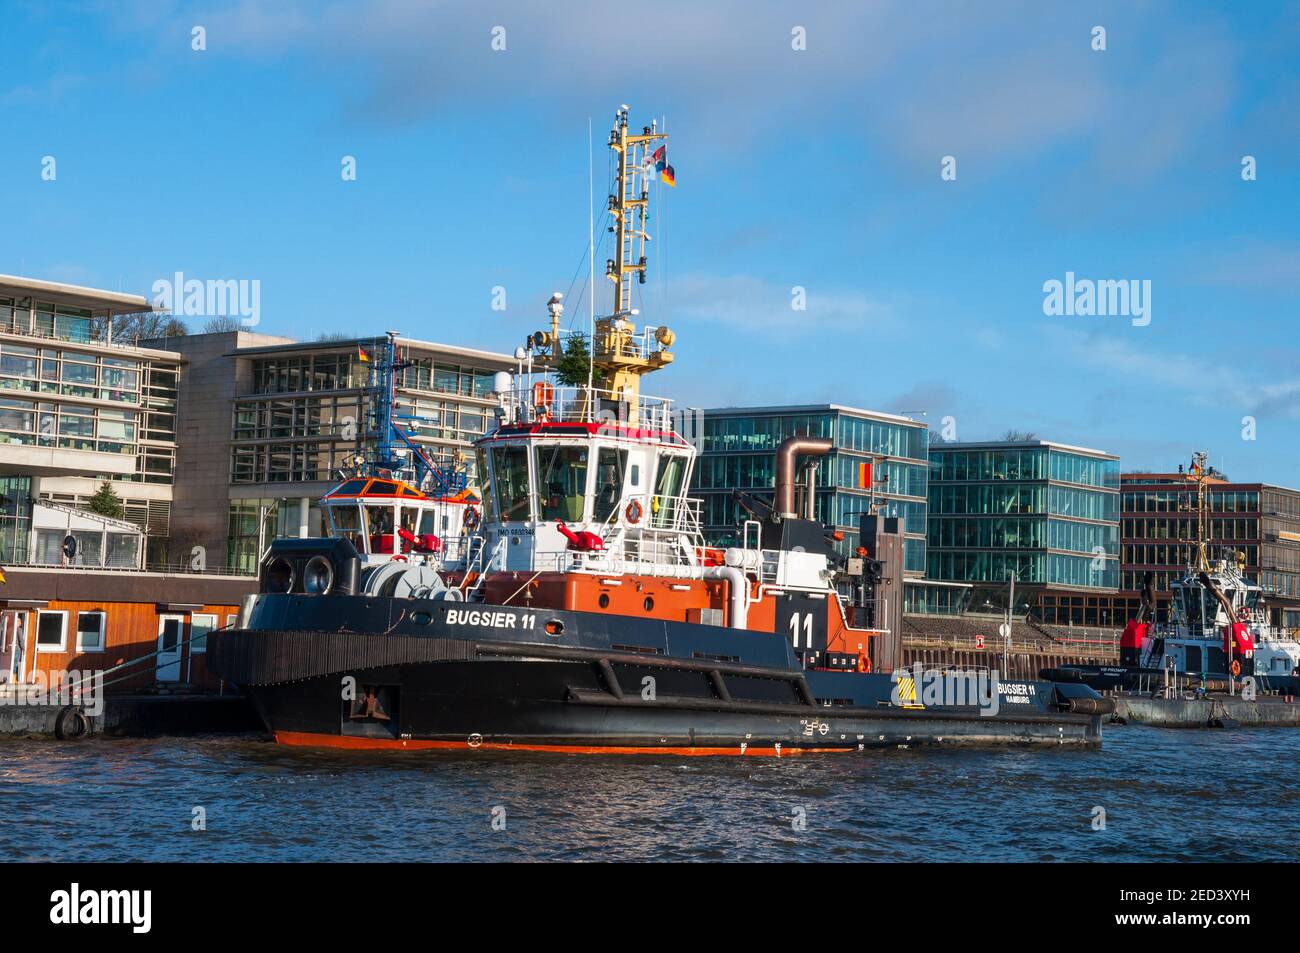 Amburgo Germania - Dicembre 16. 2017: Tugboat tedesco Bugsier 11 nel porto di amburgo Foto Stock